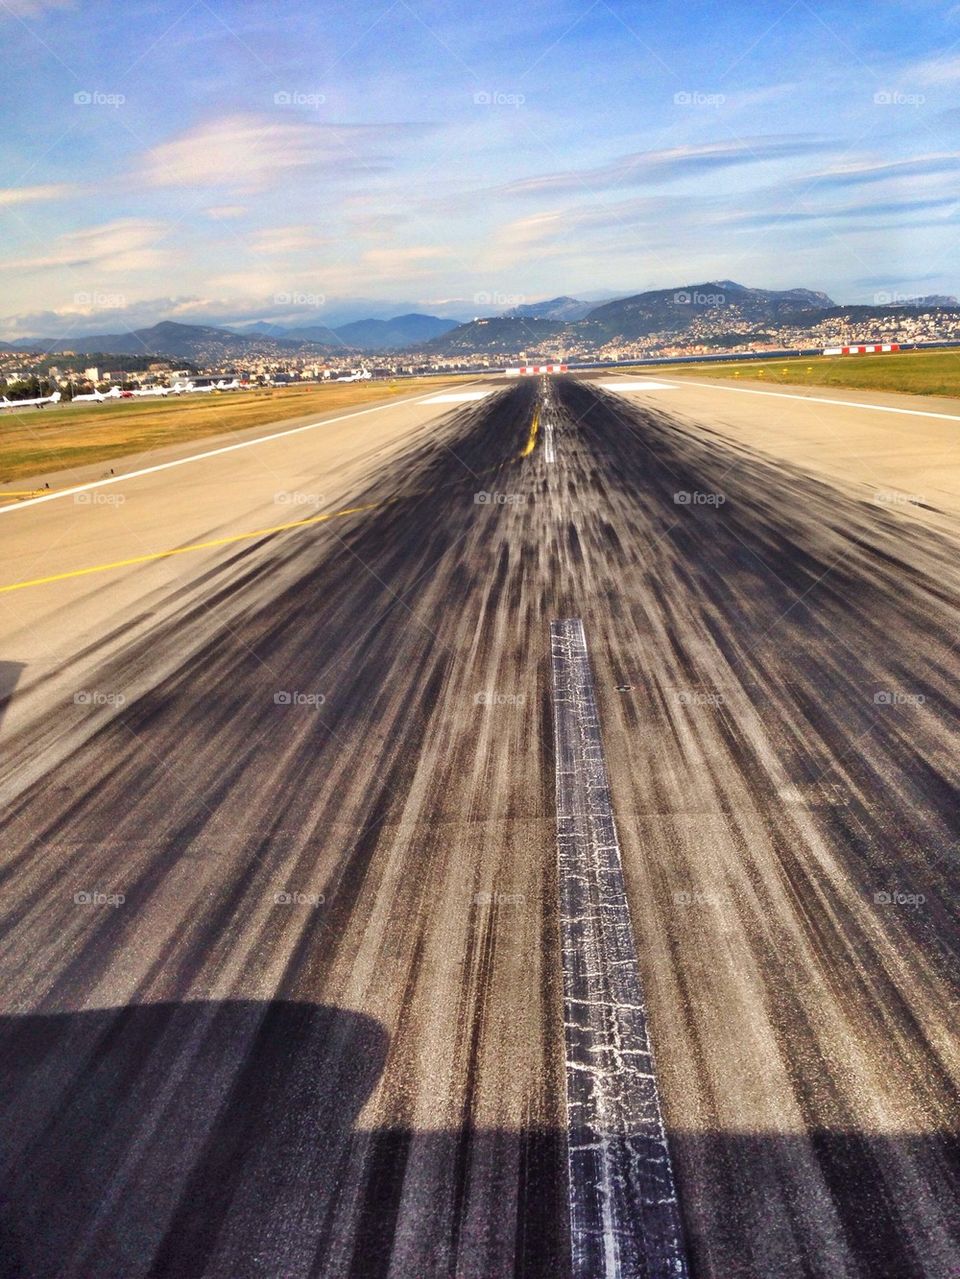 Airport runway, preparing for take off!